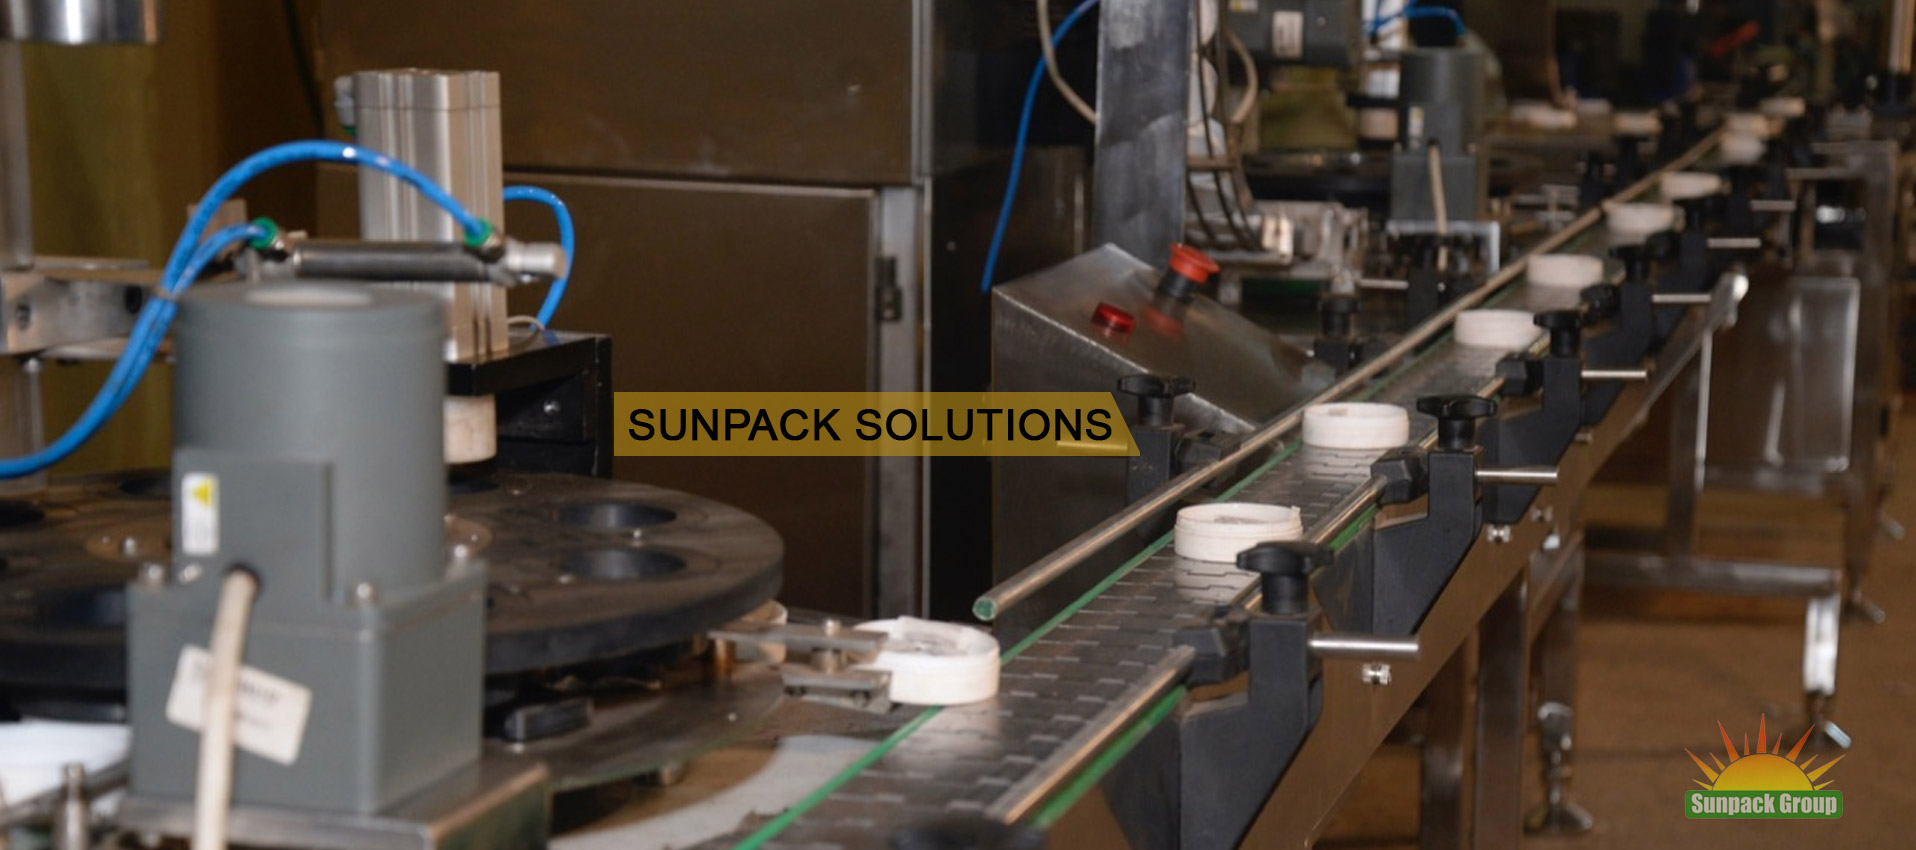 sunpackgroup GmbH aus Deutschland